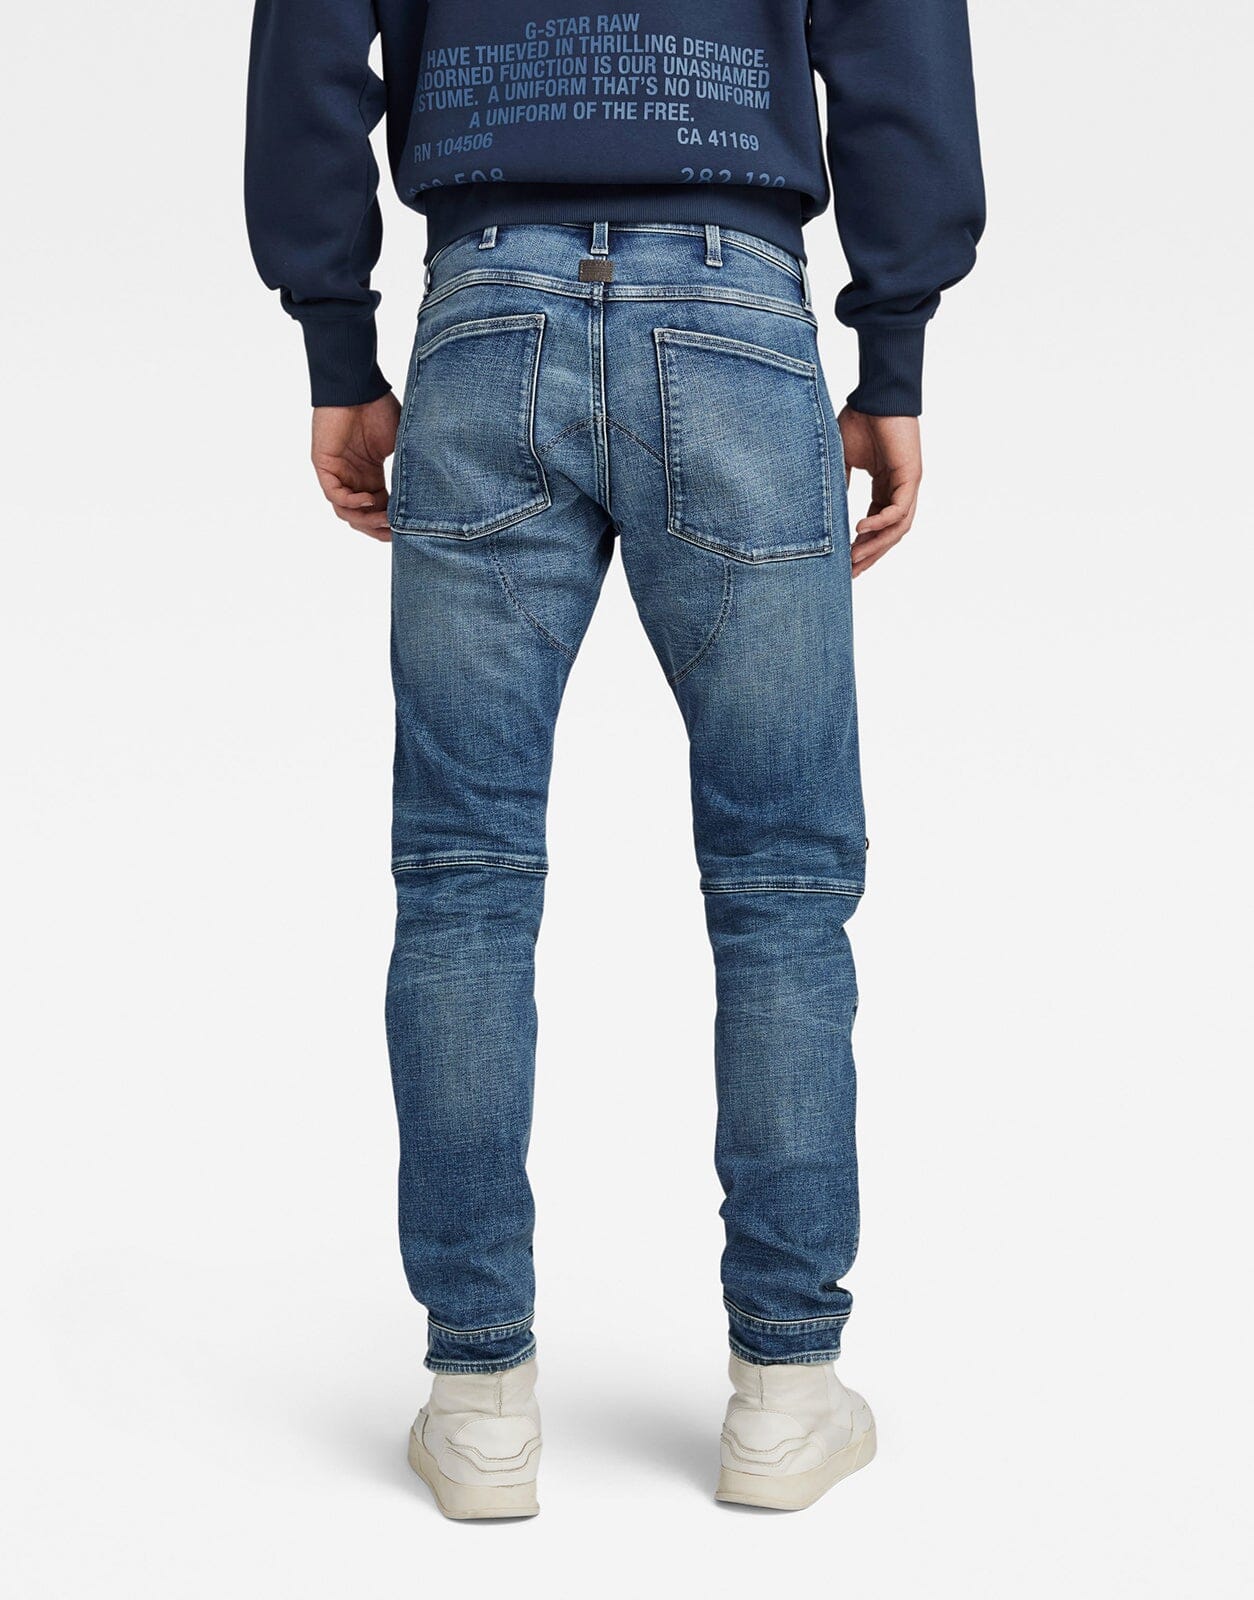 G-Star RAW 5620 3D Zip Knee Skinny Blue Jeans - Subwear